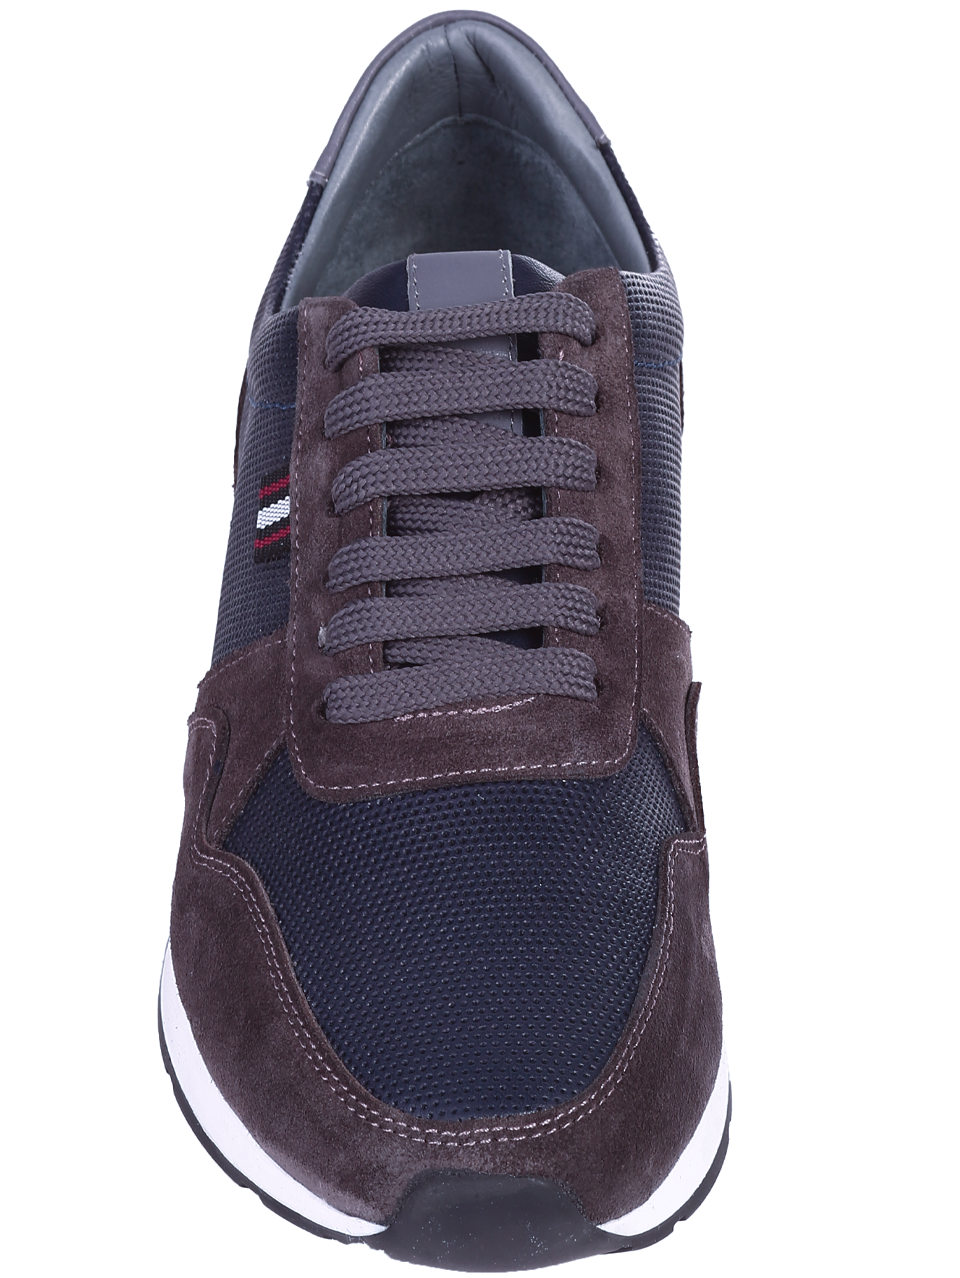 Ежедневни мъжки обувки от естествена кожа 7AT-24363 grey/navy